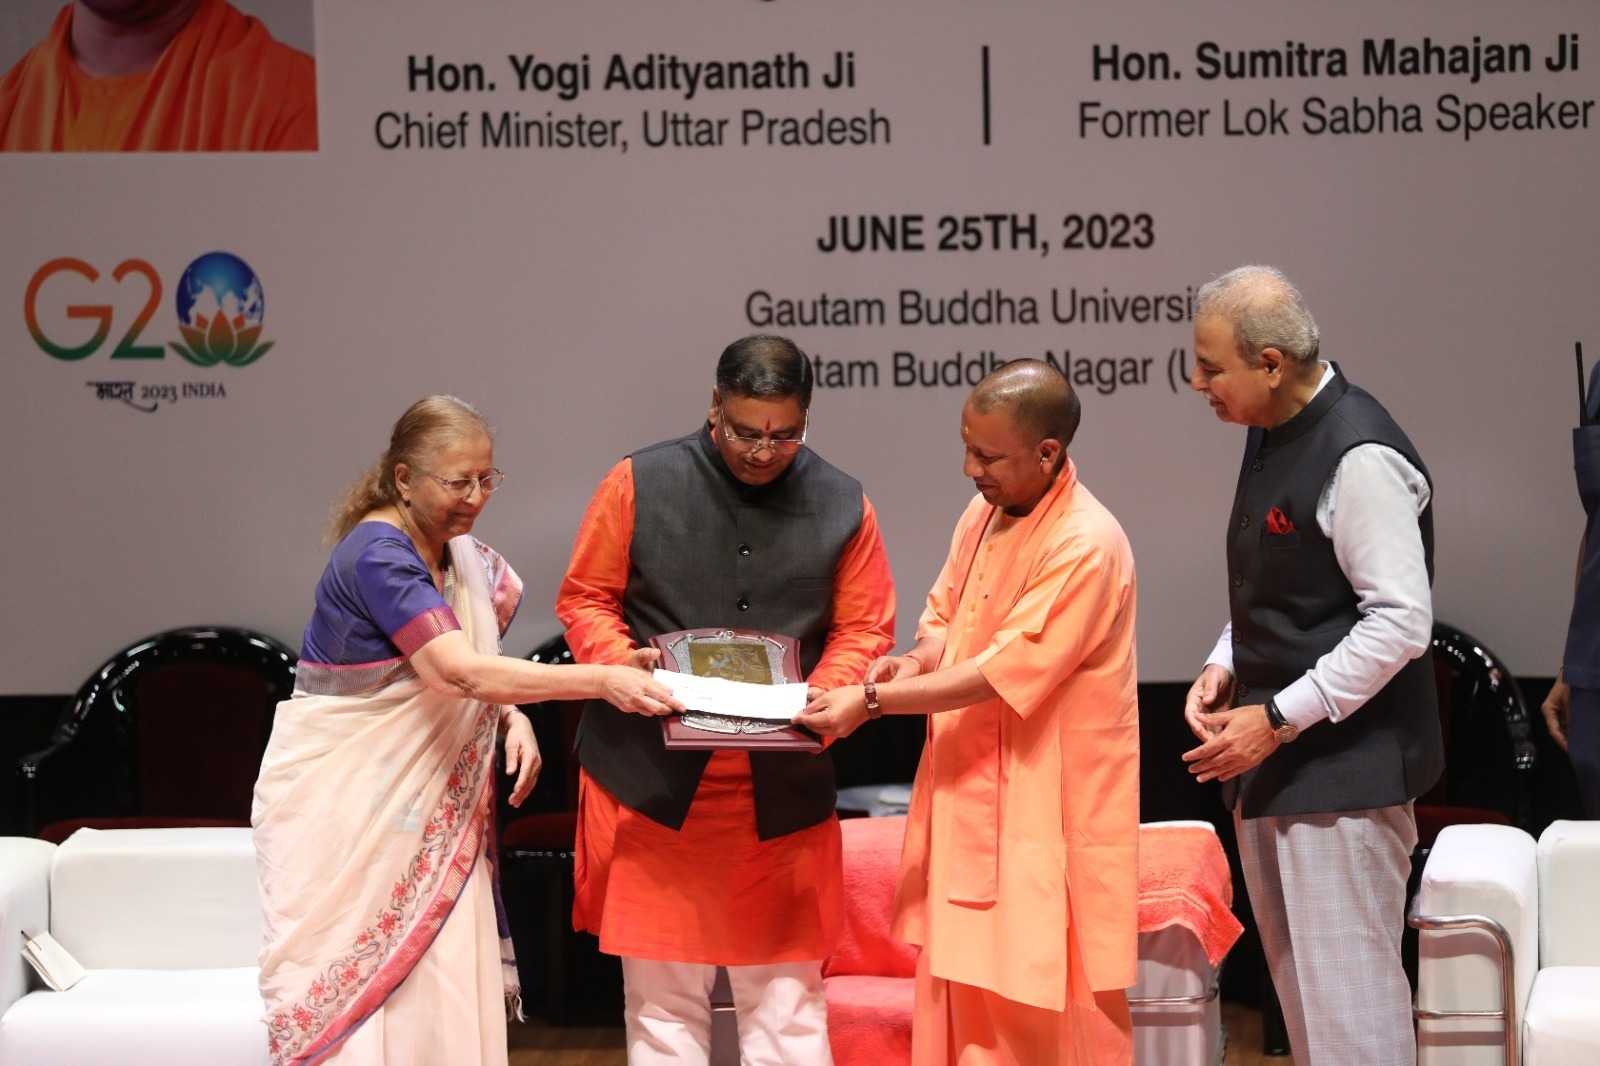 मुख्यमंत्री योगी आदित्यनाथ द्वारा हिन्दू जनजागृति समिति के रमेश शिंदे को प्रदान किया गया "सांस्कृतिक योद्धा पुरस्कार 2023"